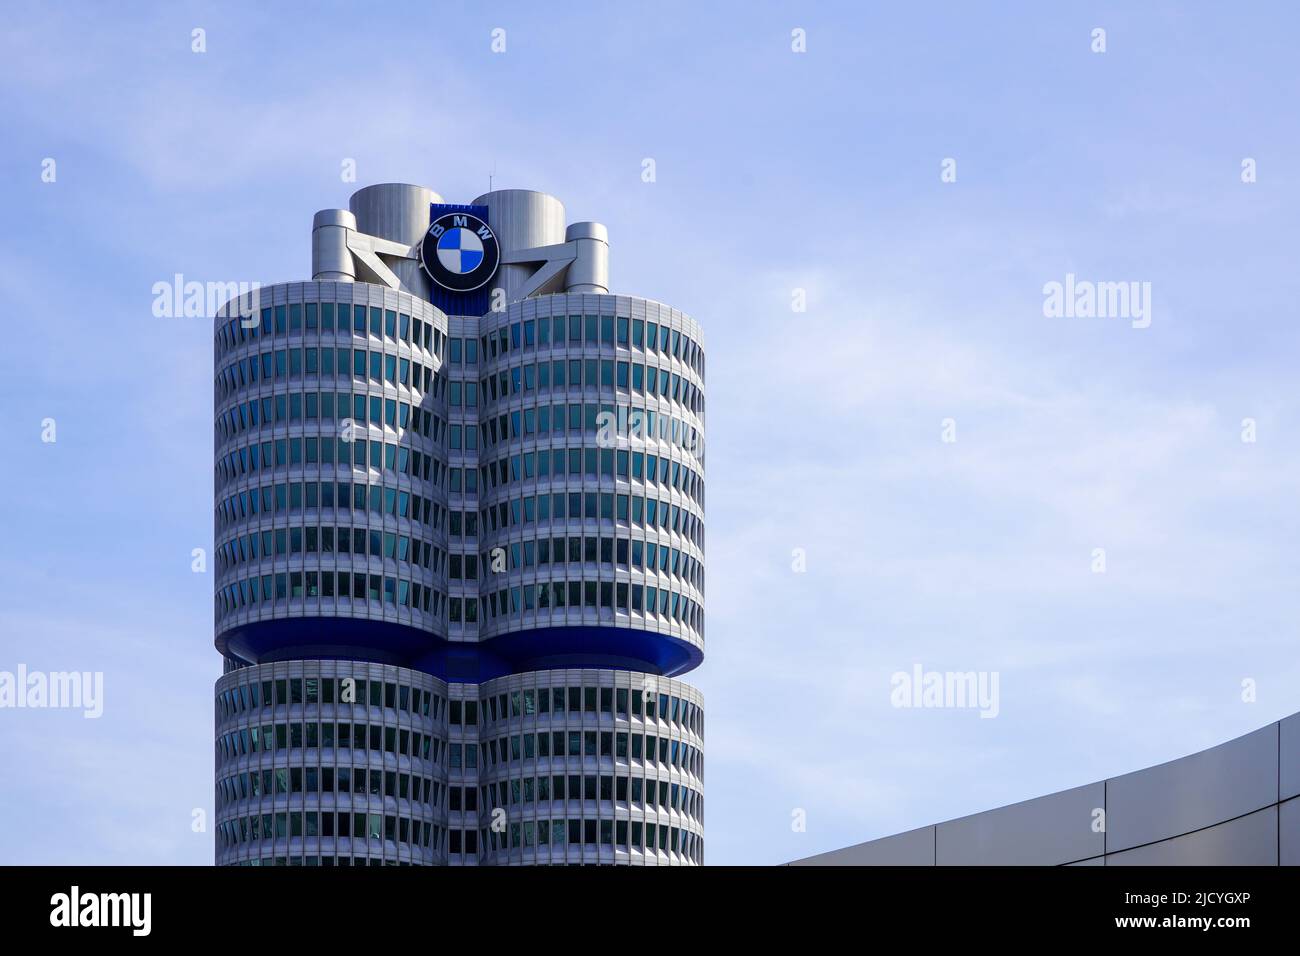 La torre BMW, el BMW de cuatro cilindros es el edificio principal de la administración y el hito del fabricante de coches BMW en Munich, Alemania, 12.4.22 Foto de stock